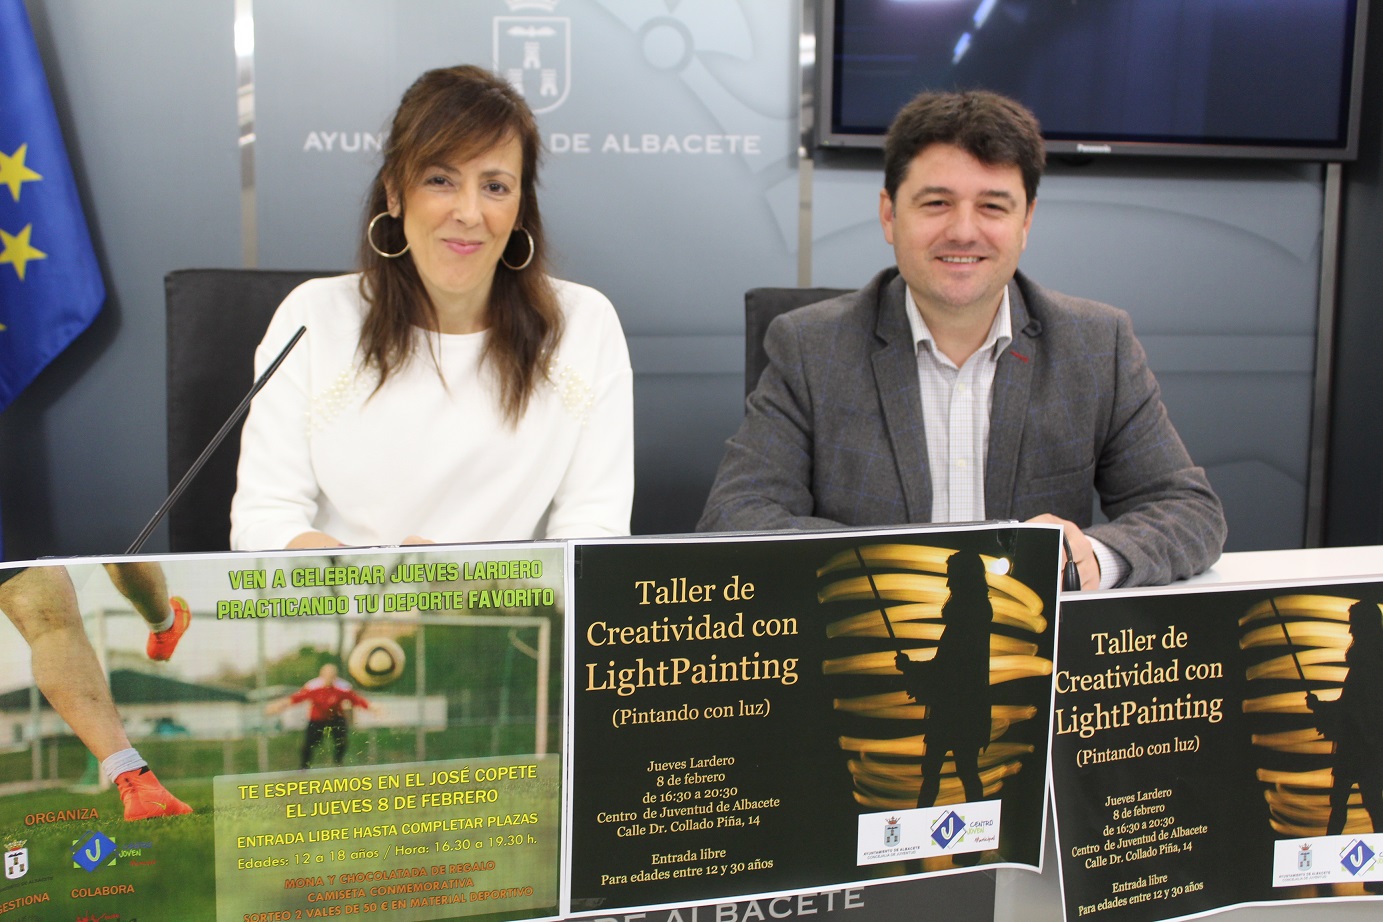 El Ayuntamiento de Albacete presenta un “Jueves Lardero” cargado de actividades con la finalidad de ofrecer ocio saludable y fomentar el deporte entre los jóvenes